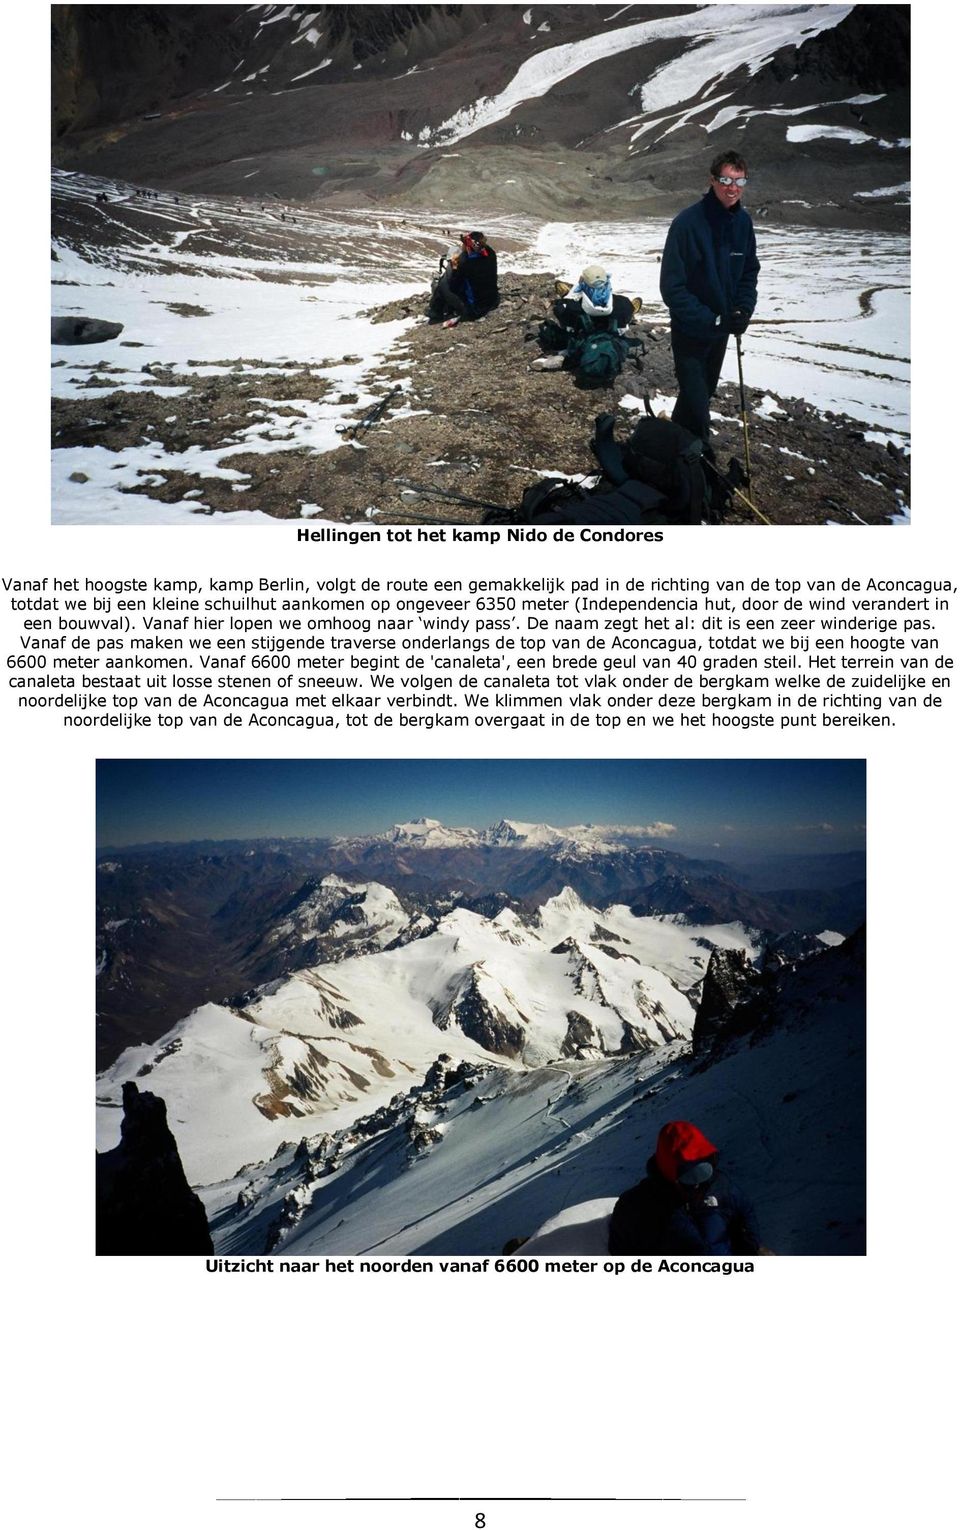 Vanaf de pas maken we een stijgende traverse onderlangs de top van de Aconcagua, totdat we bij een hoogte van 6600 meter aankomen.